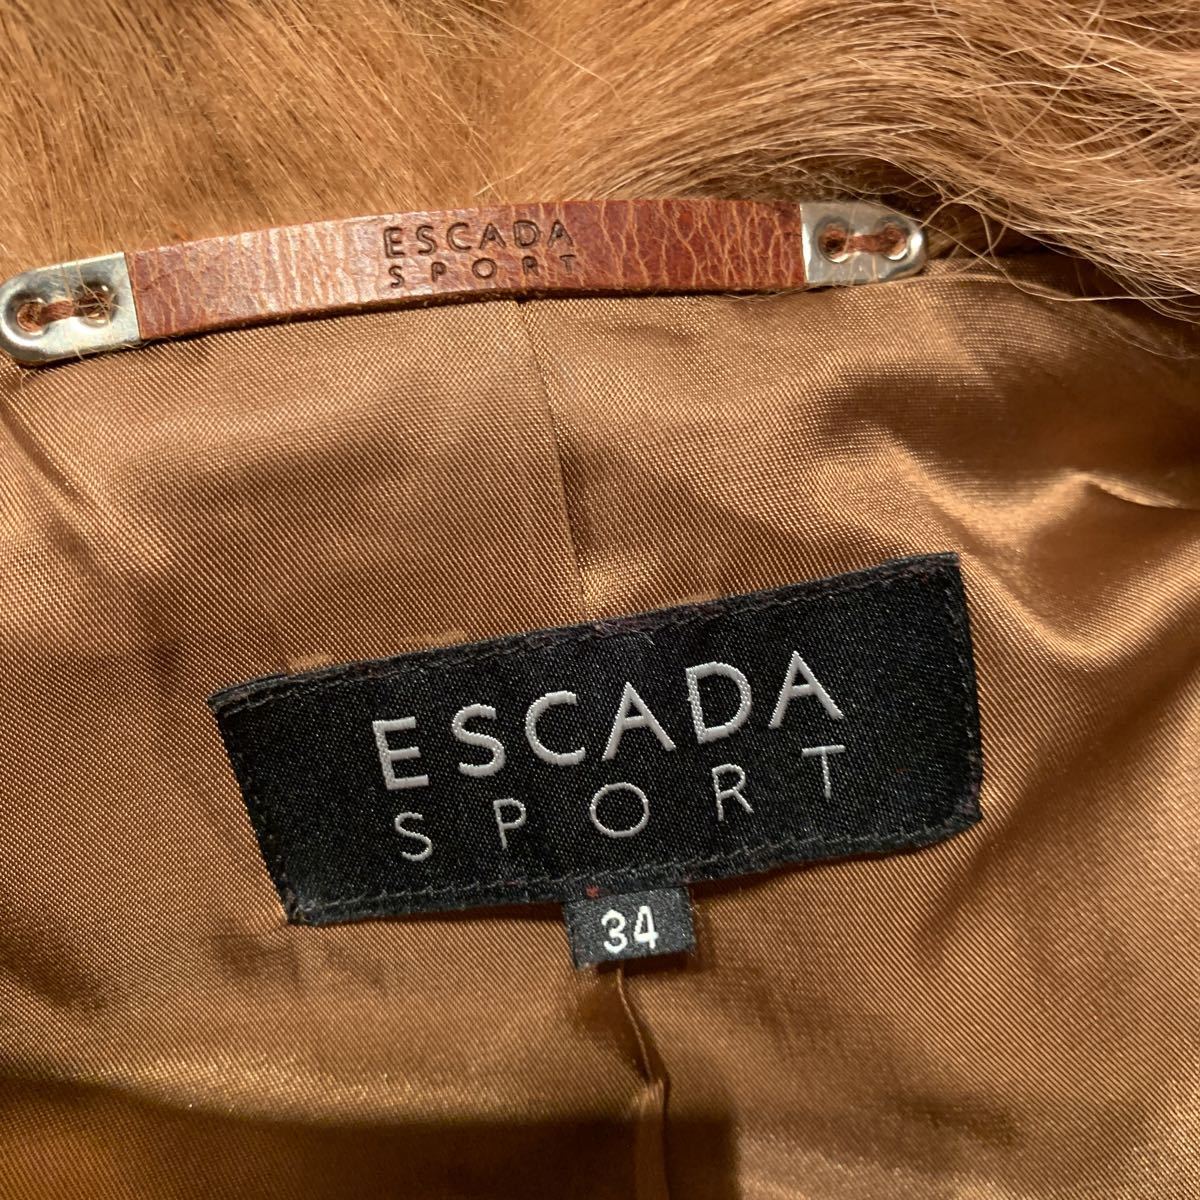  Escada s порт ESCADA SPORT меховое пальто 34 очень красивый товар 